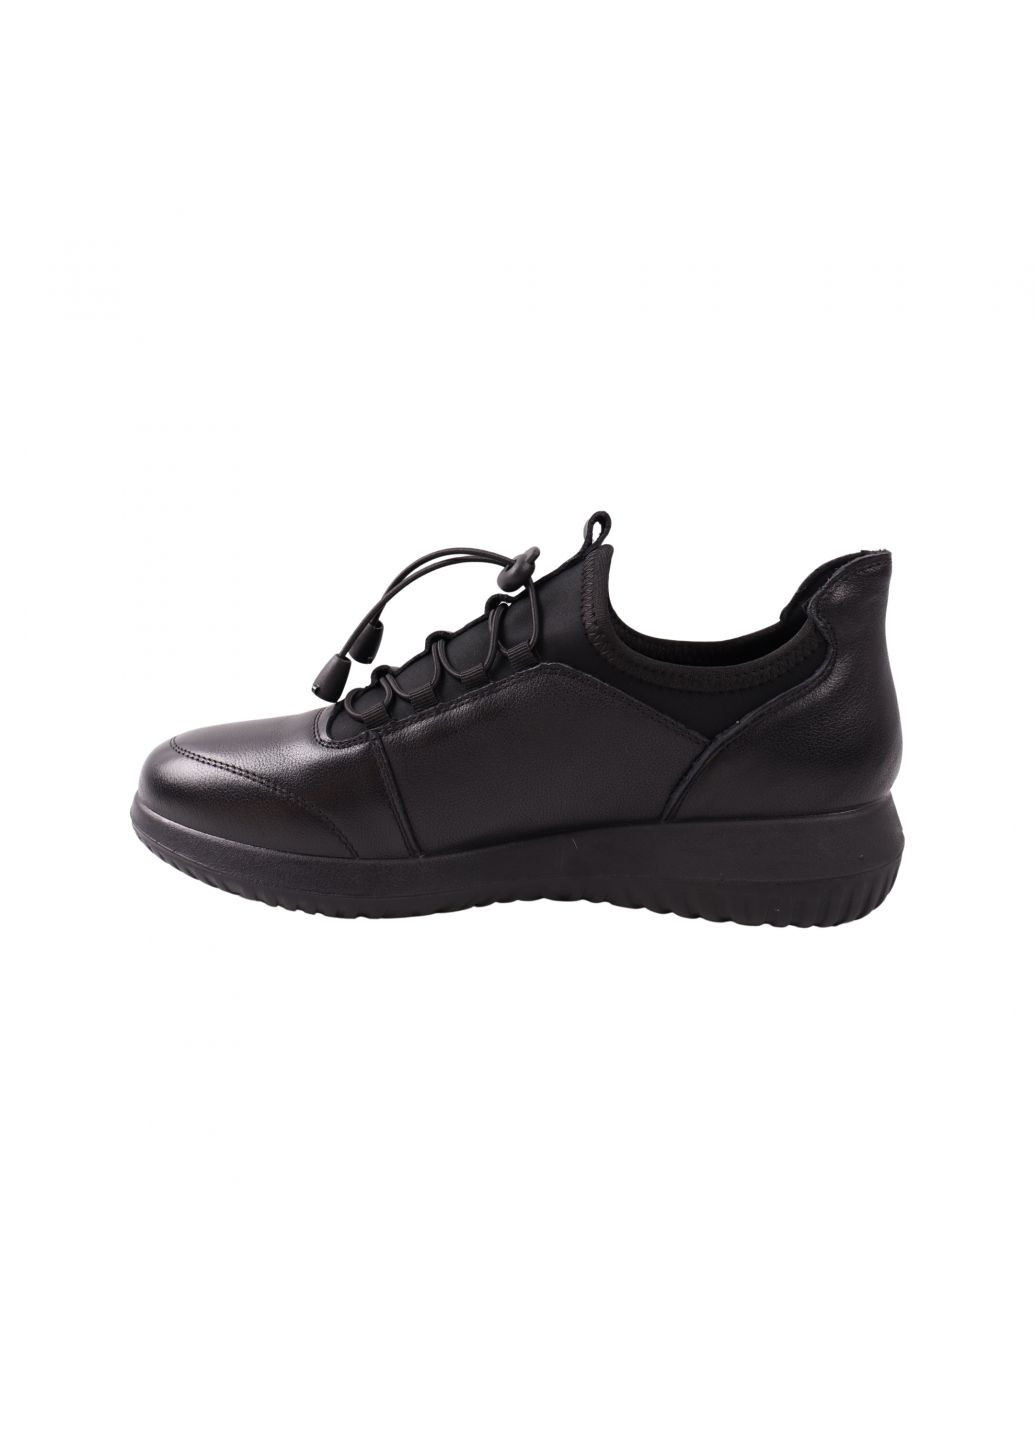 Черные кроссовки женские черные натуральная кожа Renzoni 1006-23DTC